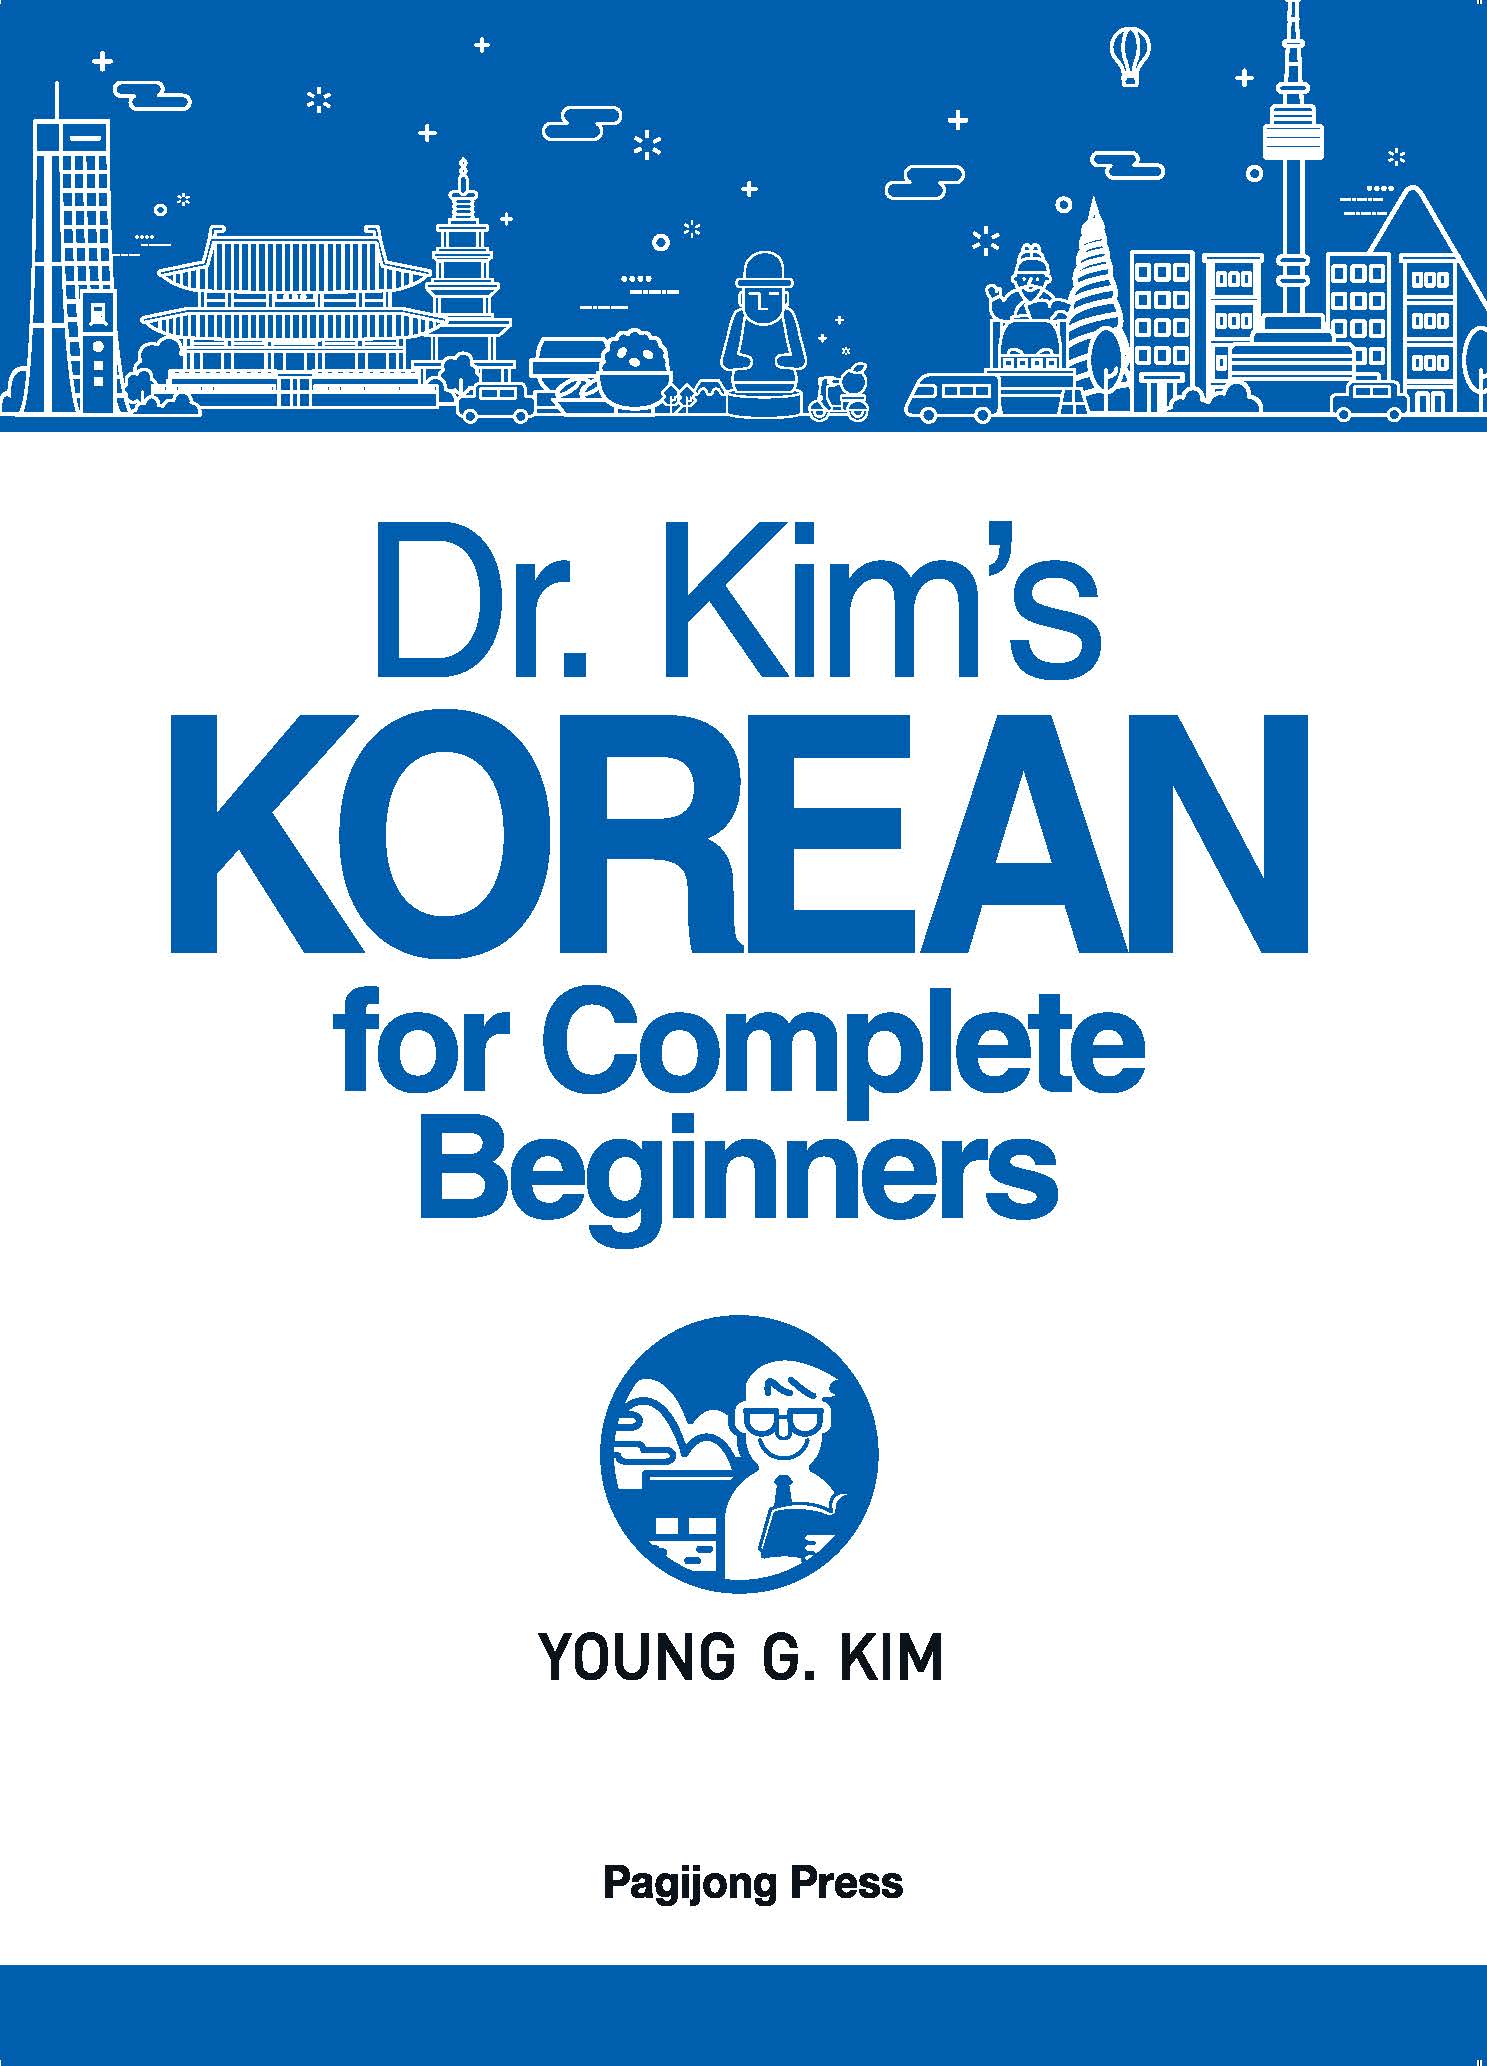 Dr. Kim's KOREAN for Complete Beginners